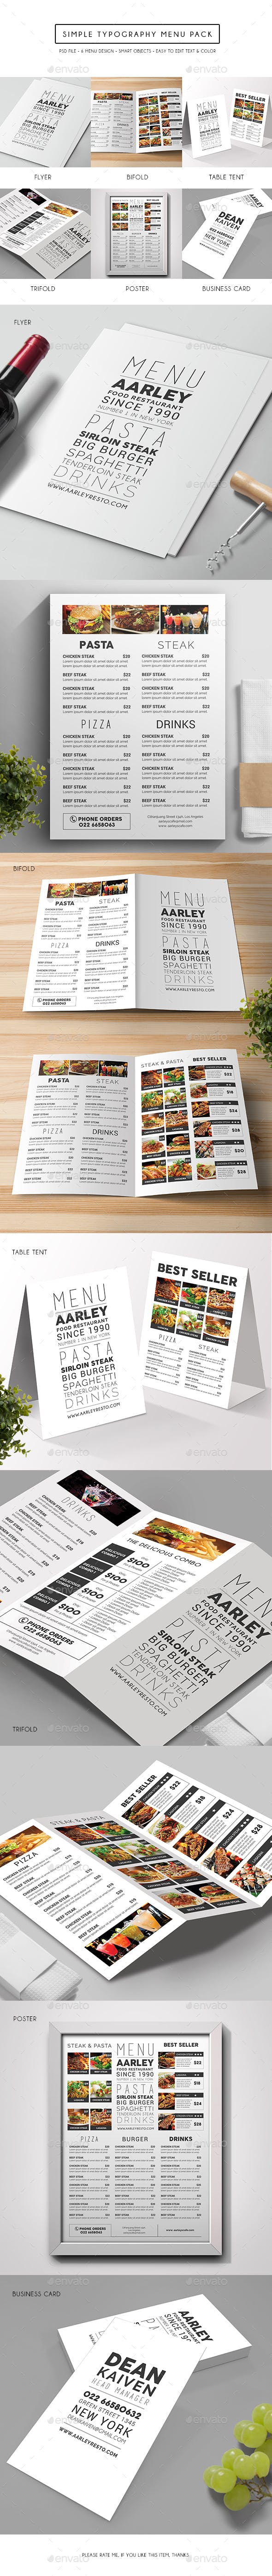 极简主义西餐厅菜单排版设计模板插图